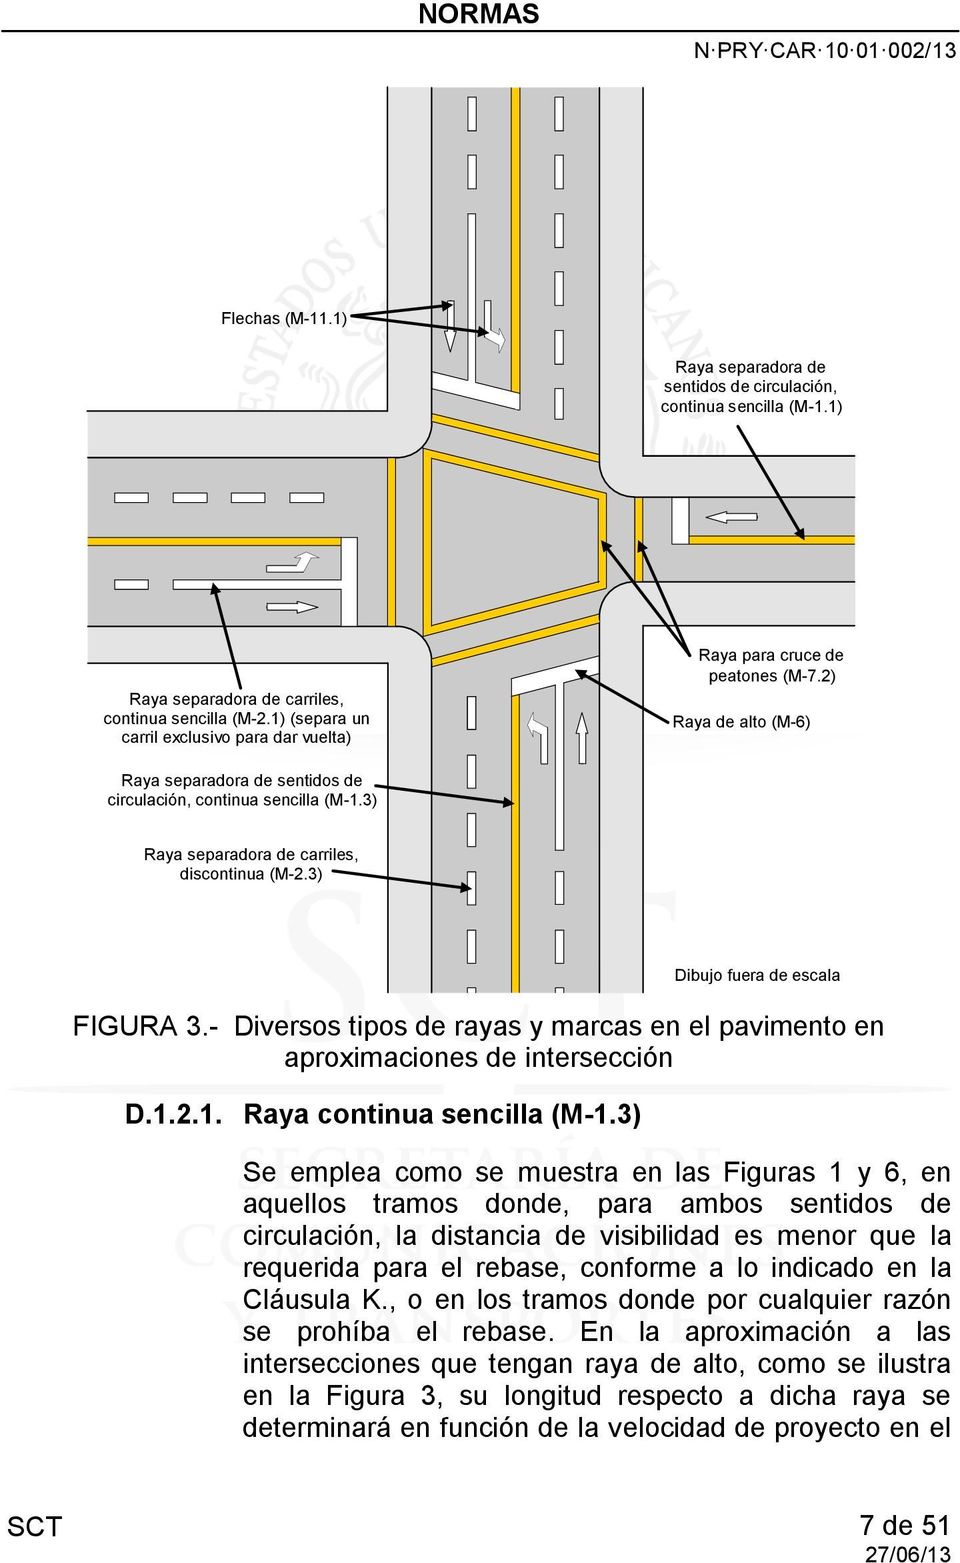 3) Raya separadora de carriles, discontinua (M-2.3) FIGURA 3.- Diversos tipos de rayas y marcas en el pavimento en aproximaciones de intersección D.1.2.1. Raya continua sencilla (M-1.